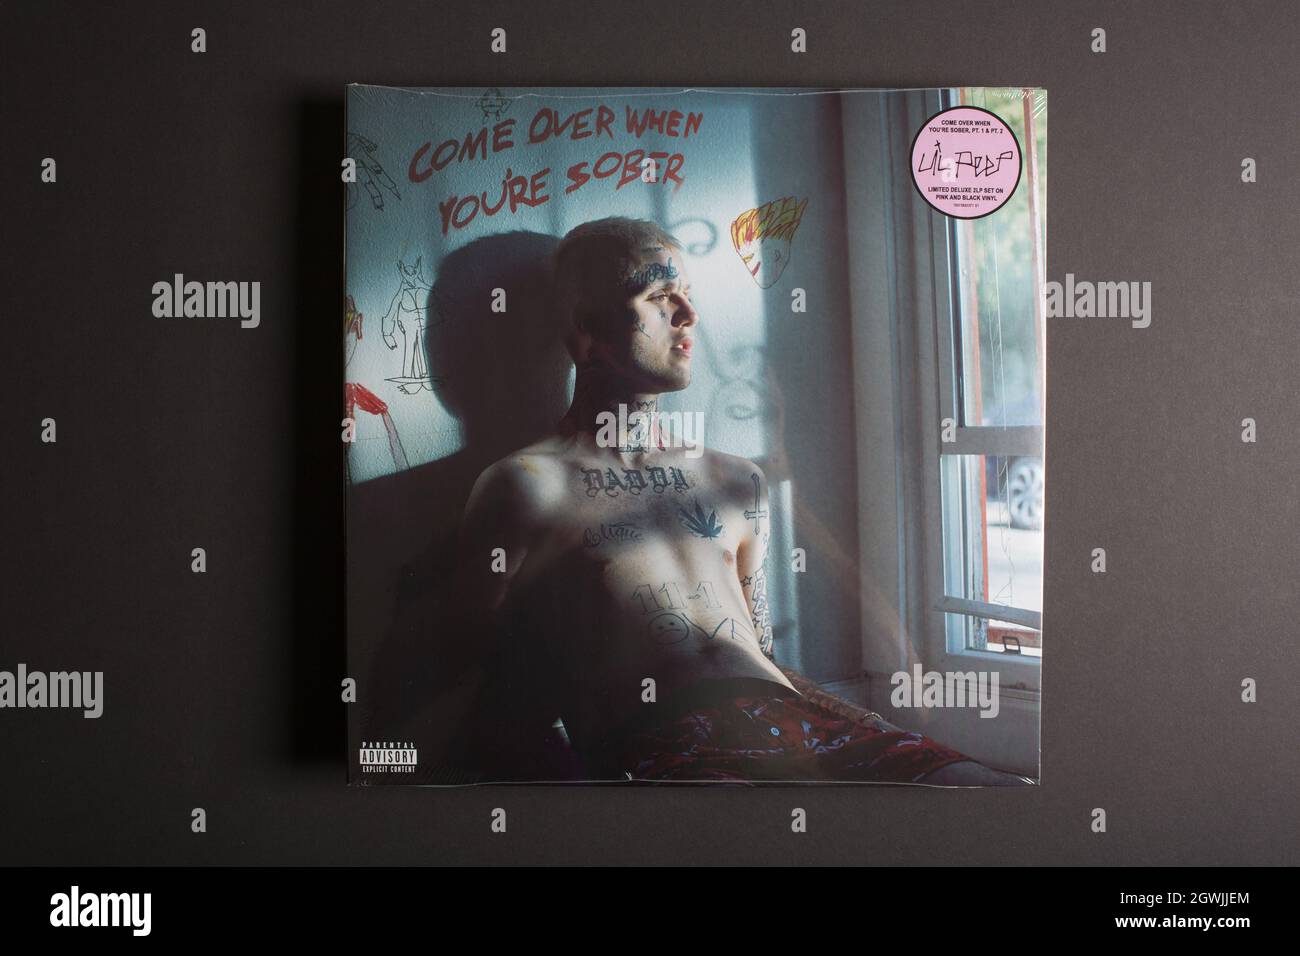 Moskau, Russland - 3. Oktober 2021: Deluxe 2 LP Edition des Albums des amerikanischen Rappers Lil Peep kommt vorbei, wenn man nüchtern ist. Schallplatte aus versiegeltem Vinyl. Stockfoto